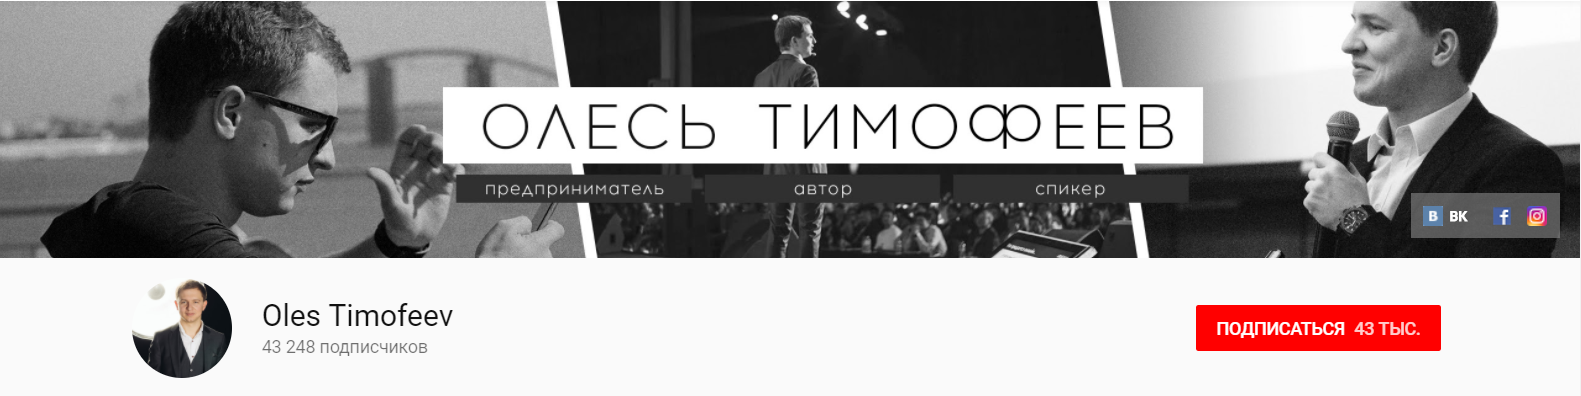 Олесь Тимофеев - идеи для фона YouTube-канала